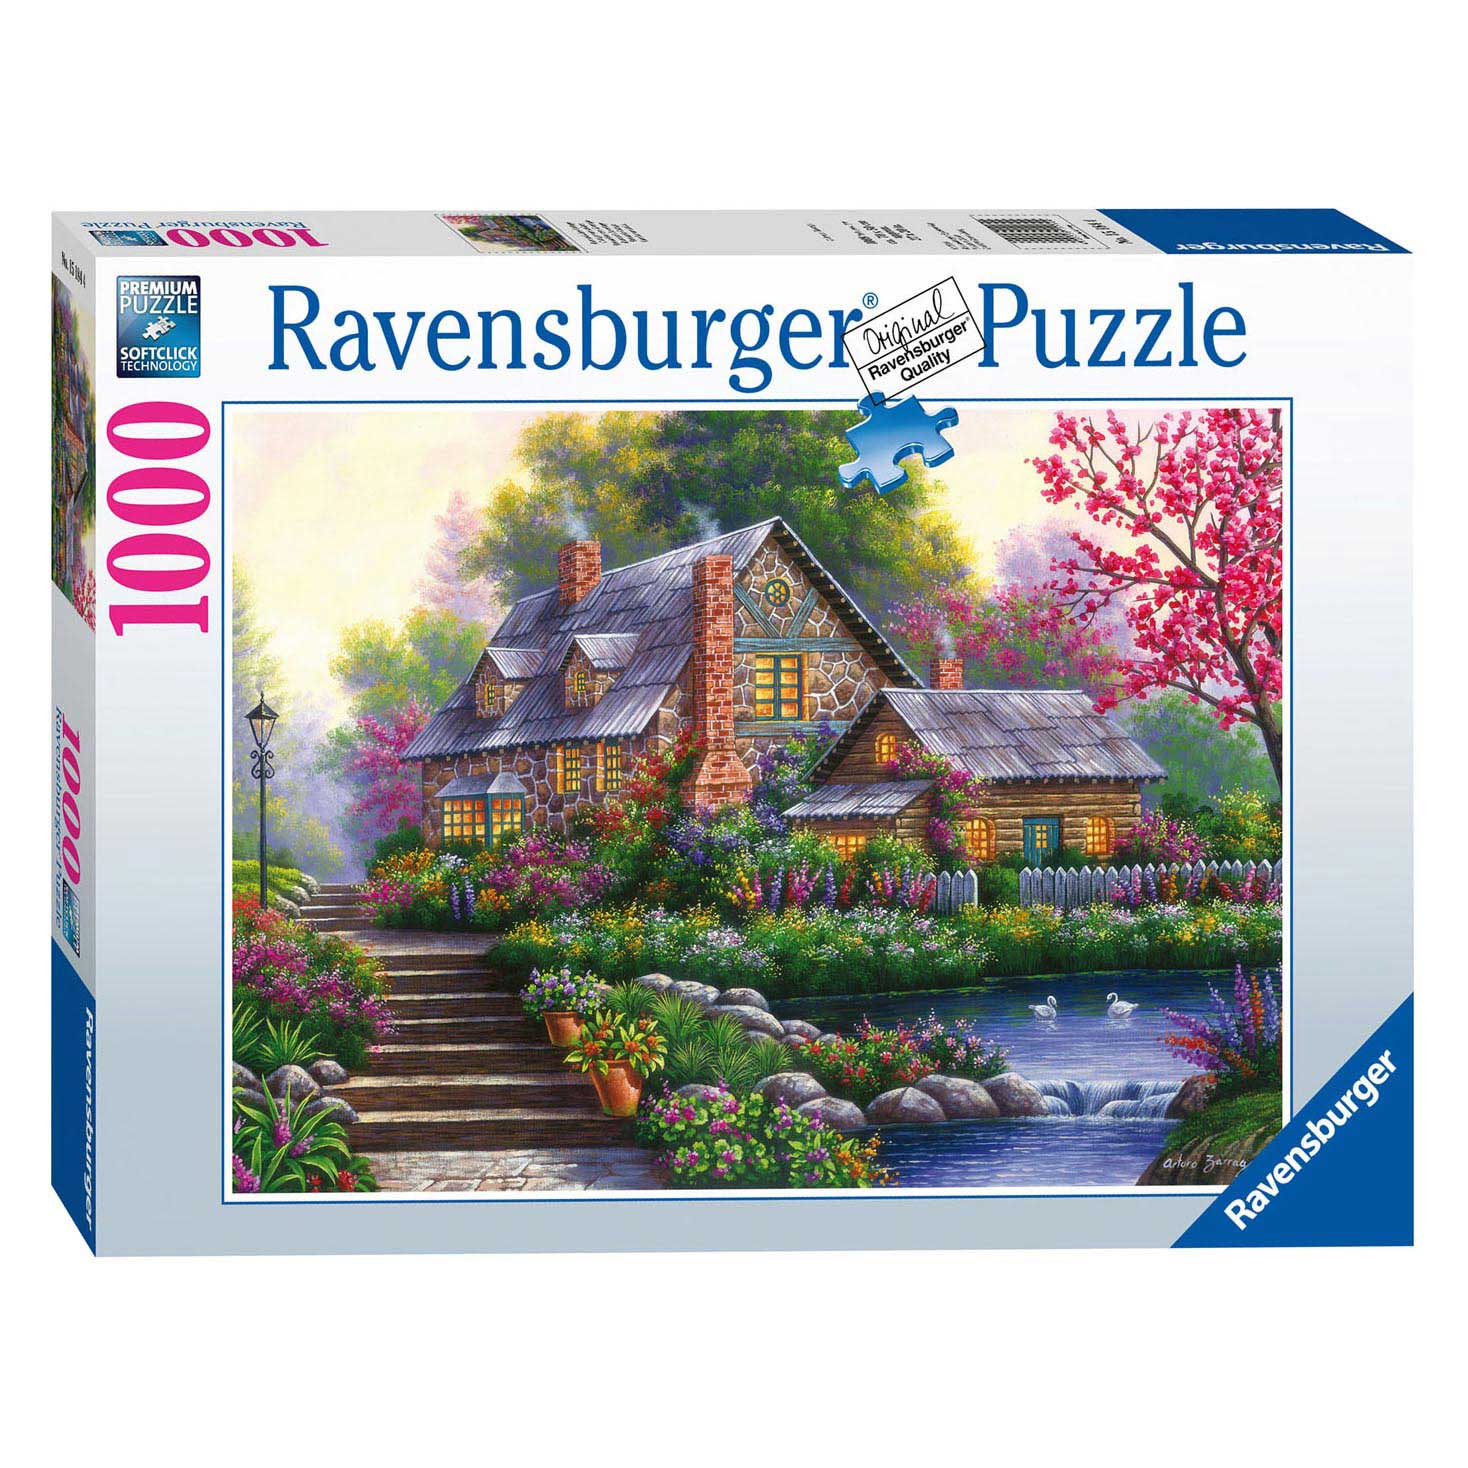 Ravensburger Puzzle Cottage romantique, 1000 pièces.